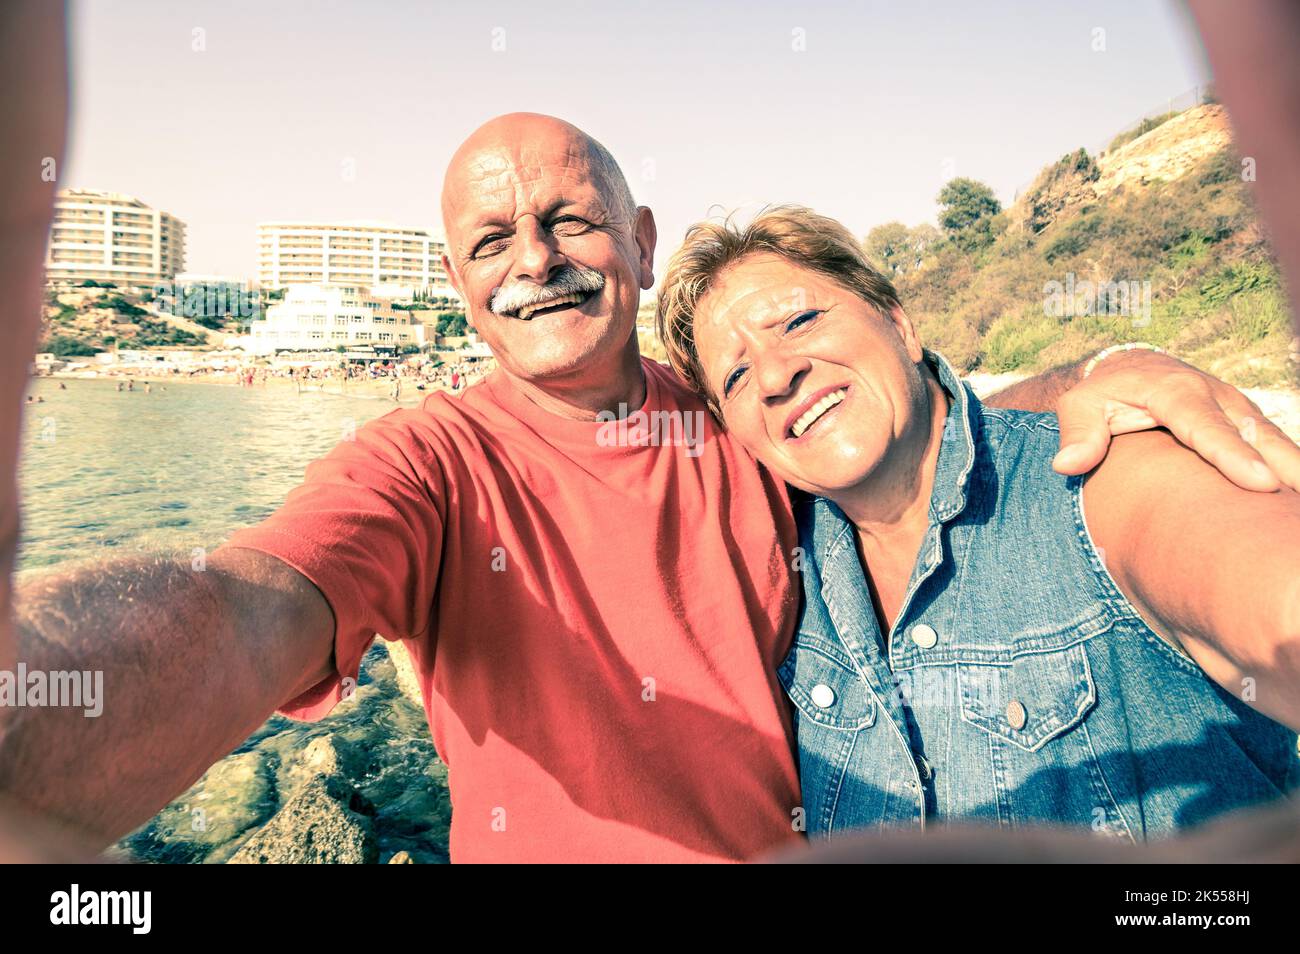 Coppia anziana felice che prende un selfie al resort Blue Grotto sulla costa sud di Malta - viaggio avventuroso verso le isole del mediterraneo - concetto di anziani attivi Foto Stock